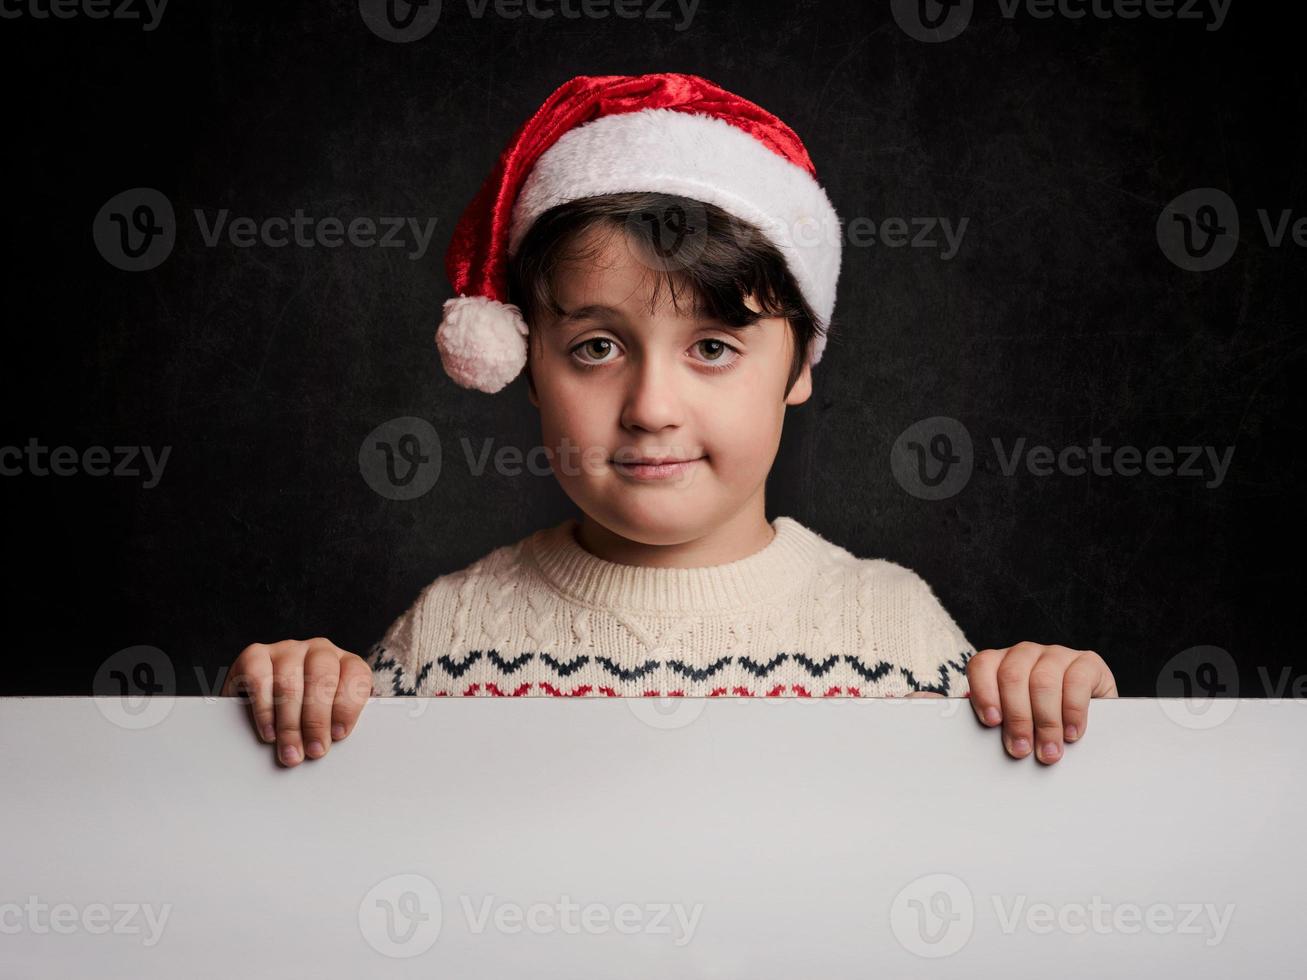 glückliches Kind zu Weihnachten neben einem Plakat foto